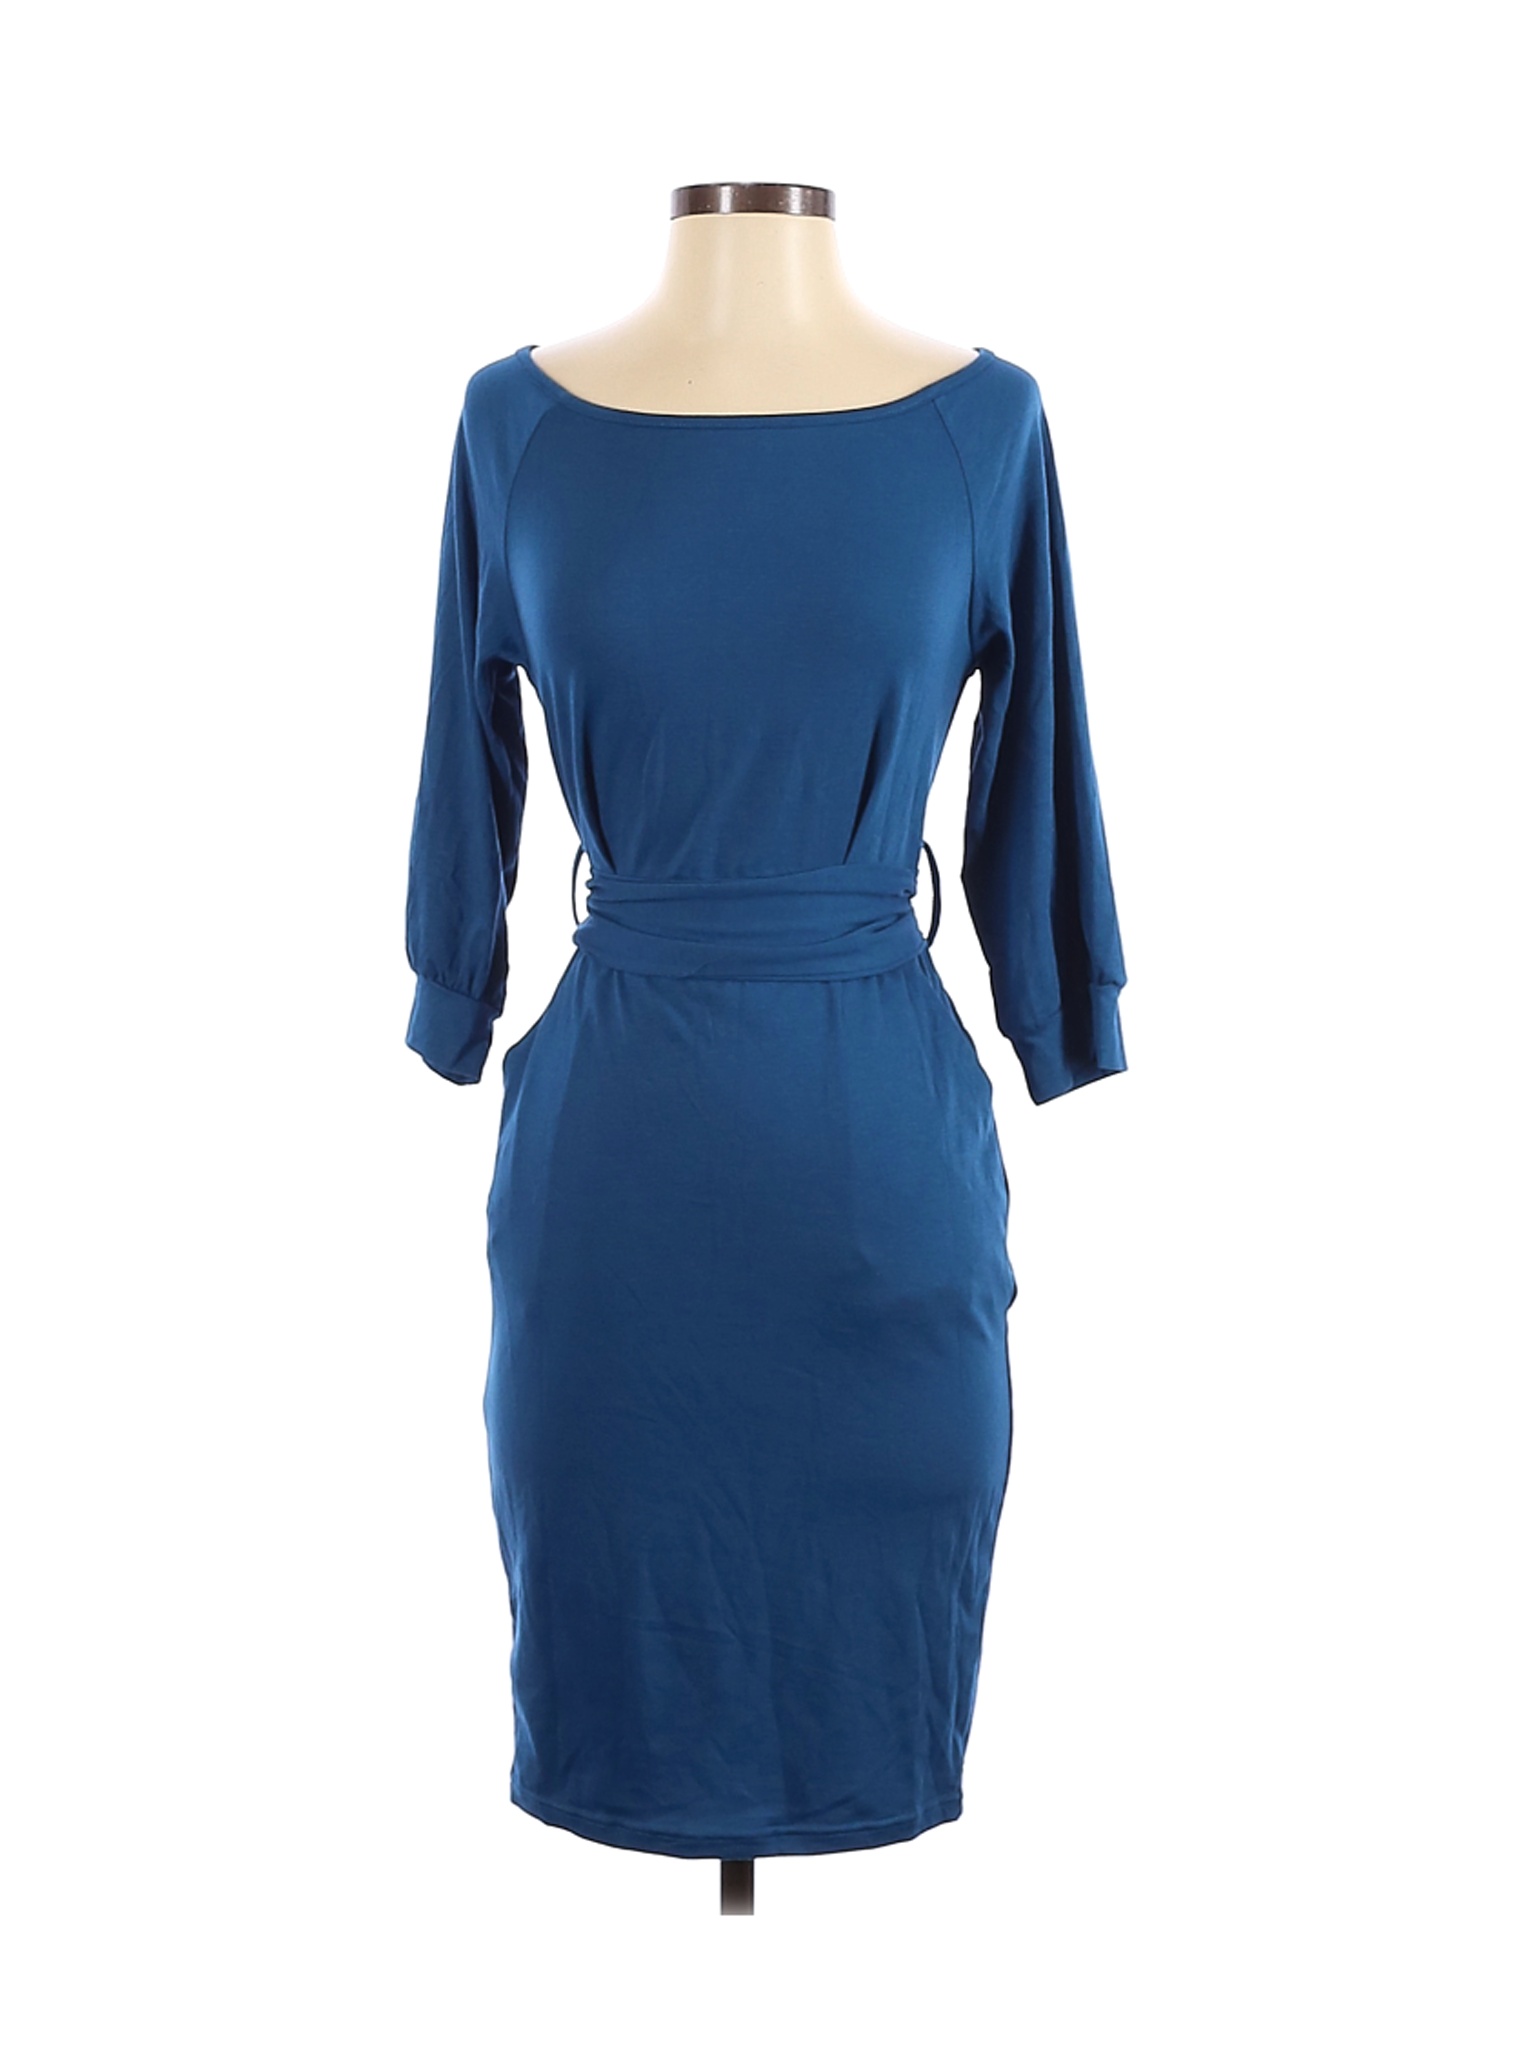 Unbranded Women Blue Casual Dress S | eBay